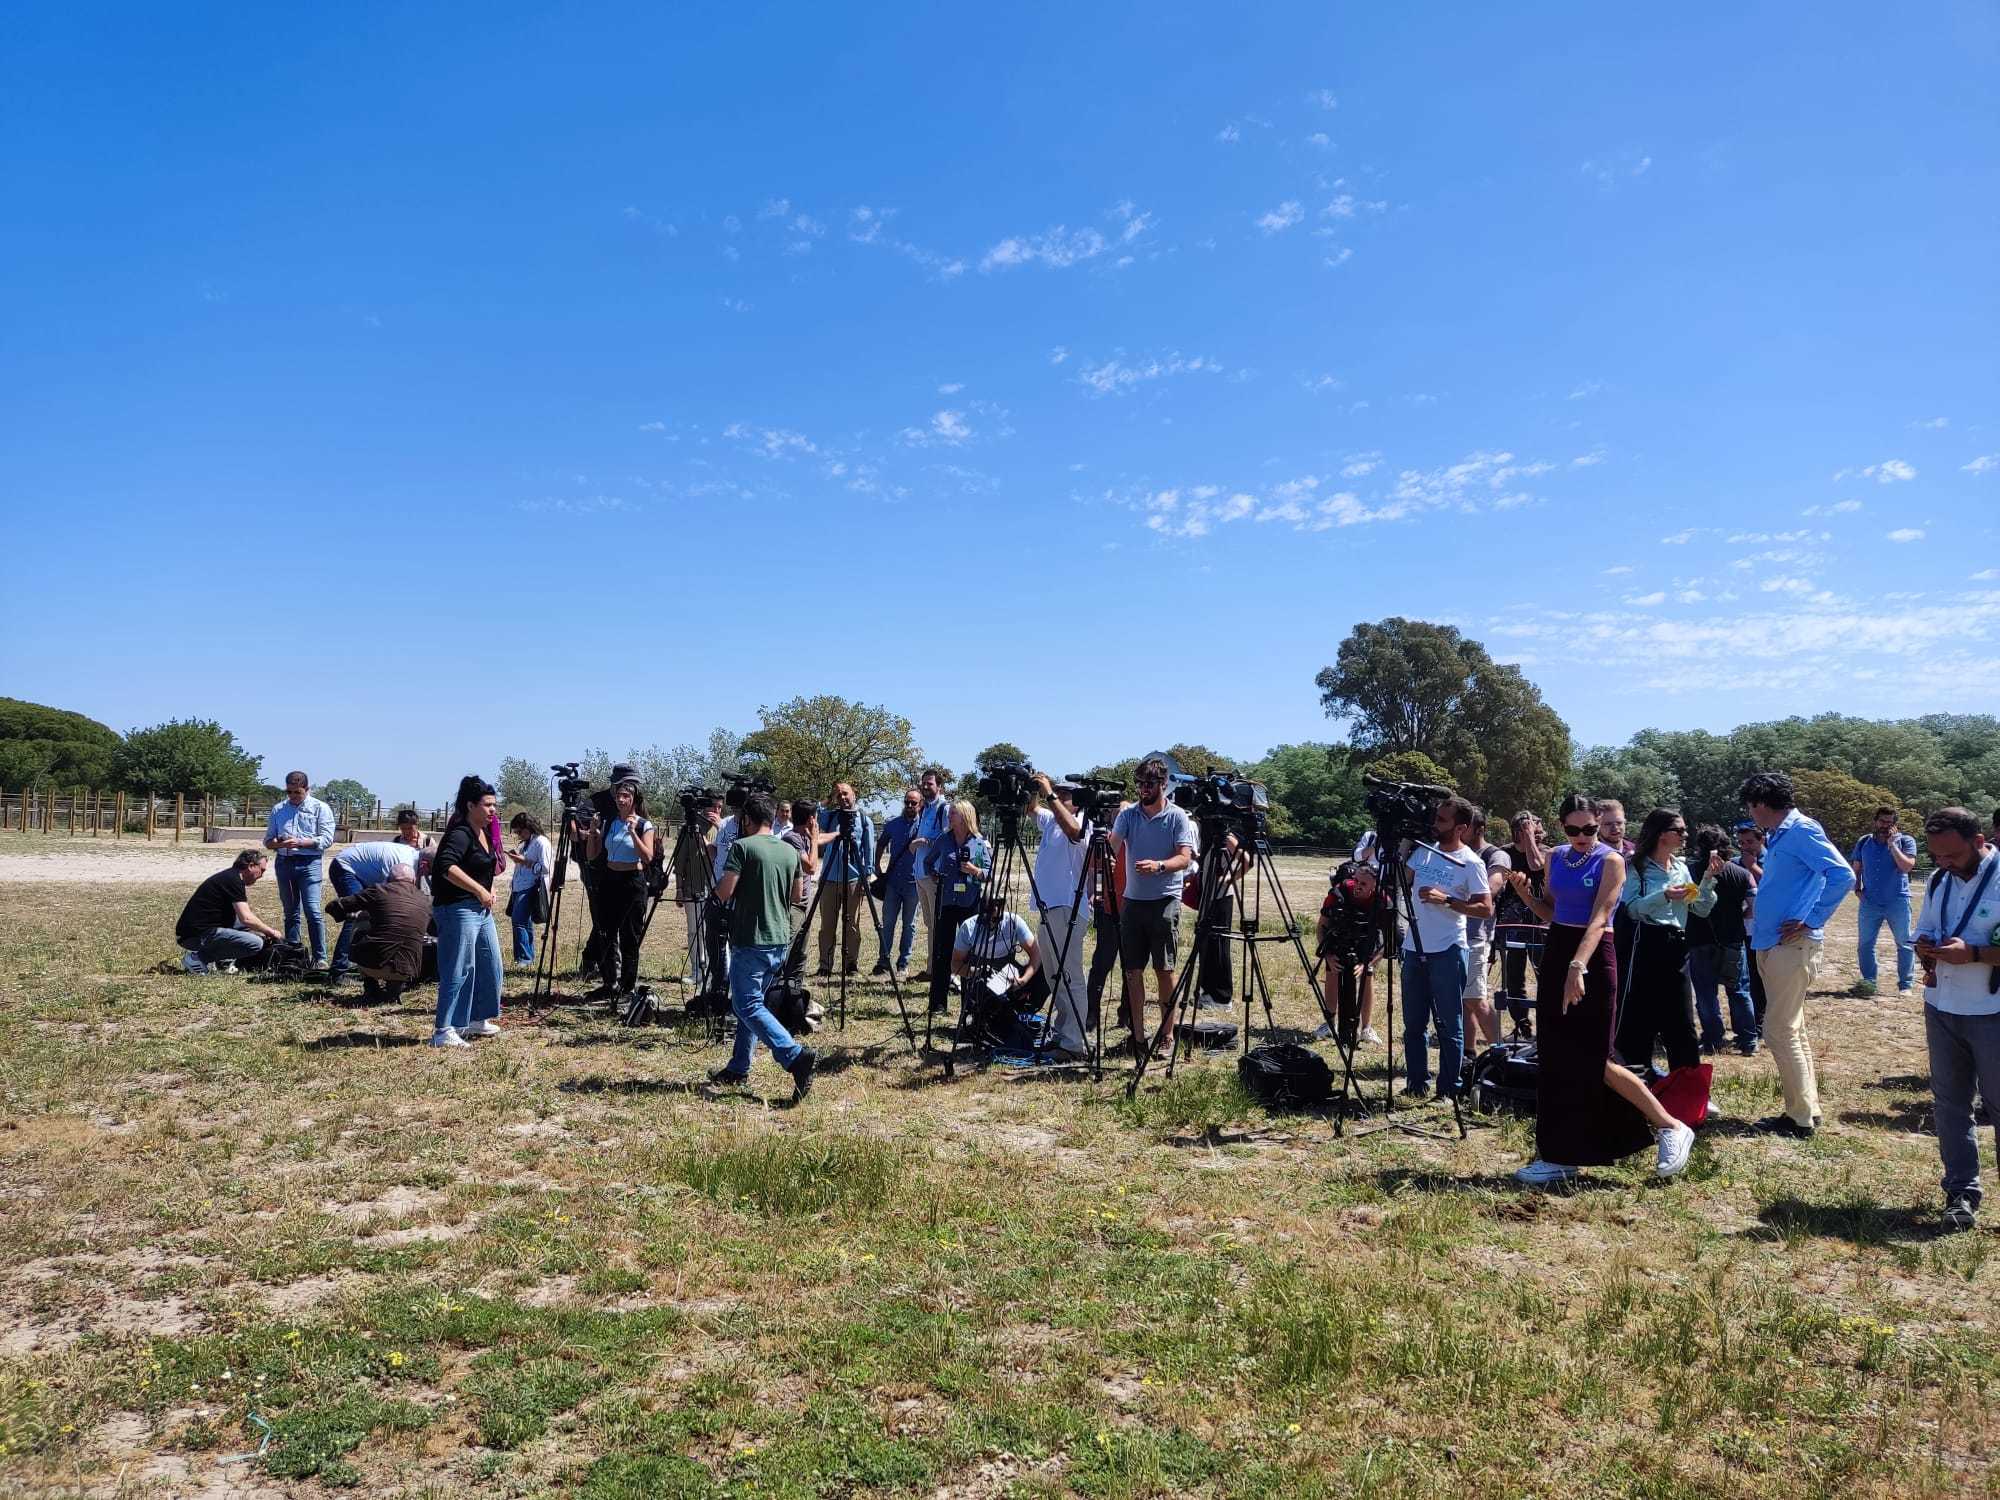 Foto de archivo de un grupo de periodistas que esperan la comparecencia de Pedro Snchez en el Parque Nacional de Doana.